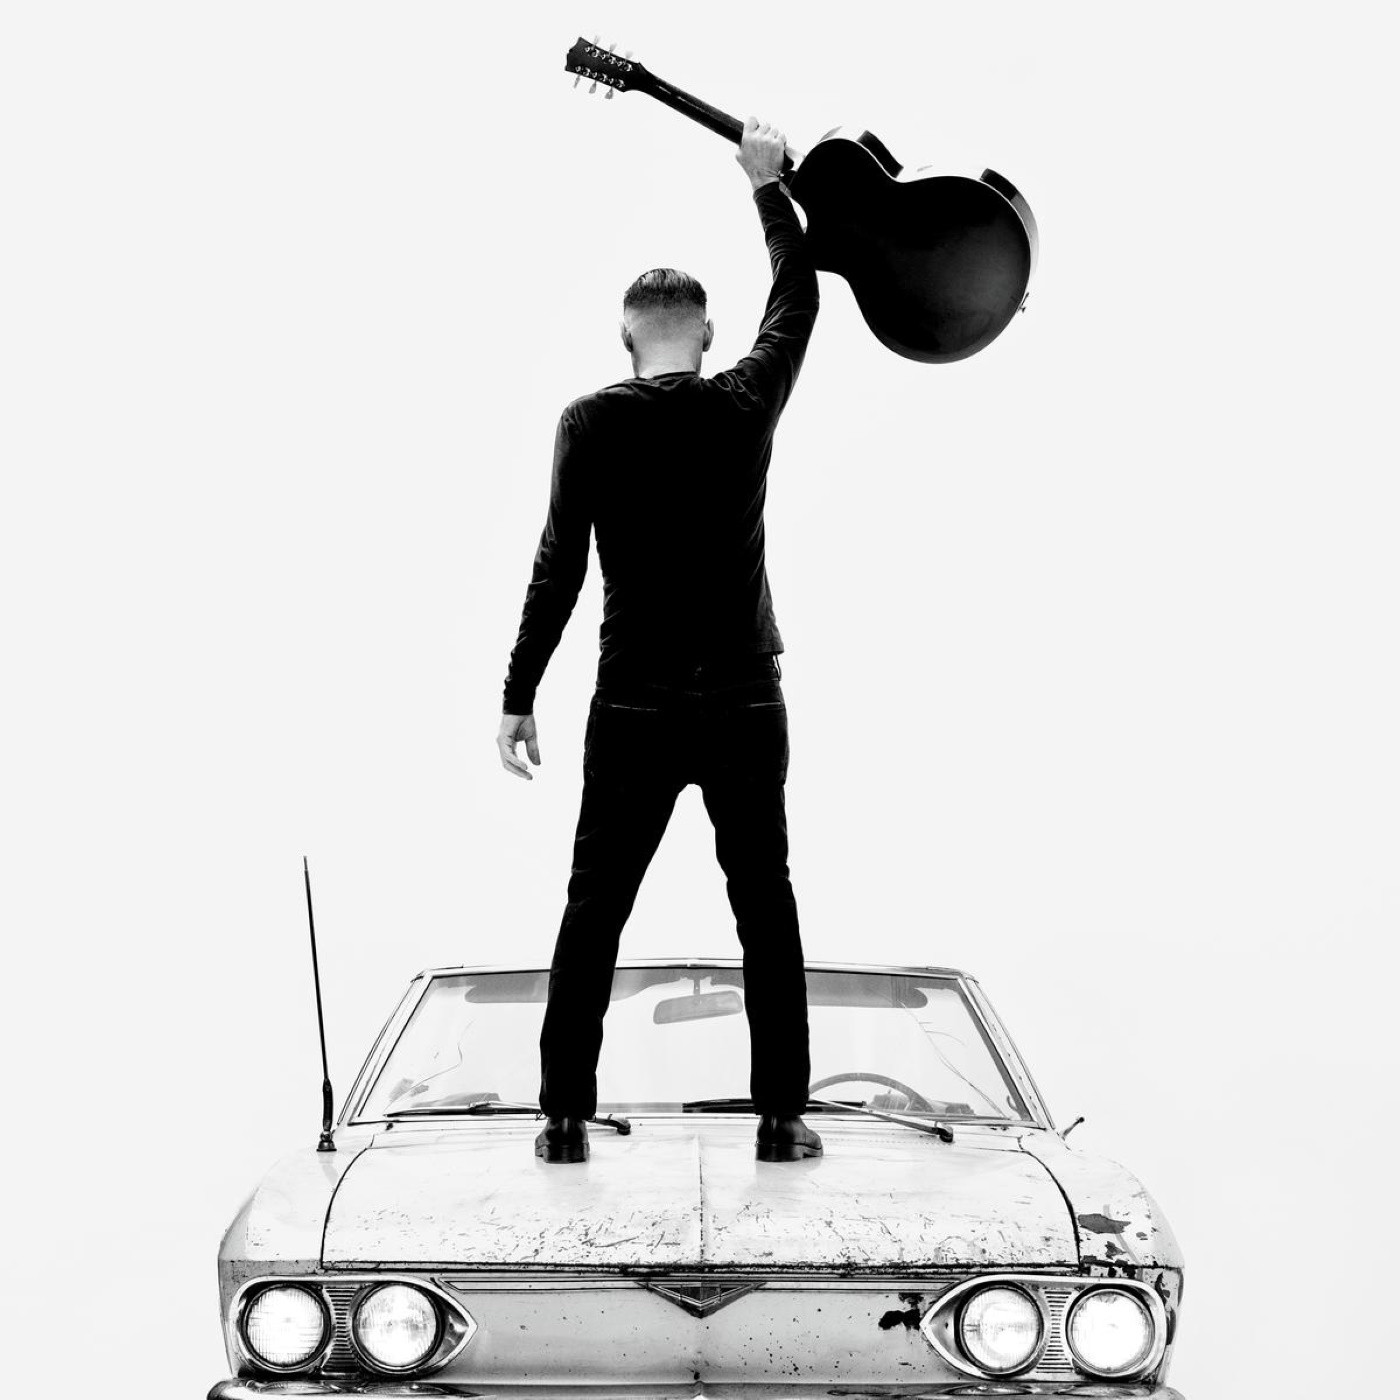 Rockstar-Geste von Bryan Adams auf seinem neuen Albumcover. Aber wahrscheinlich bringt er zu Hause noch den Müll raus. Das neue Album heißt „So Happy It Hurts“ und erscheint morgen (11.3.) Foto: Warner